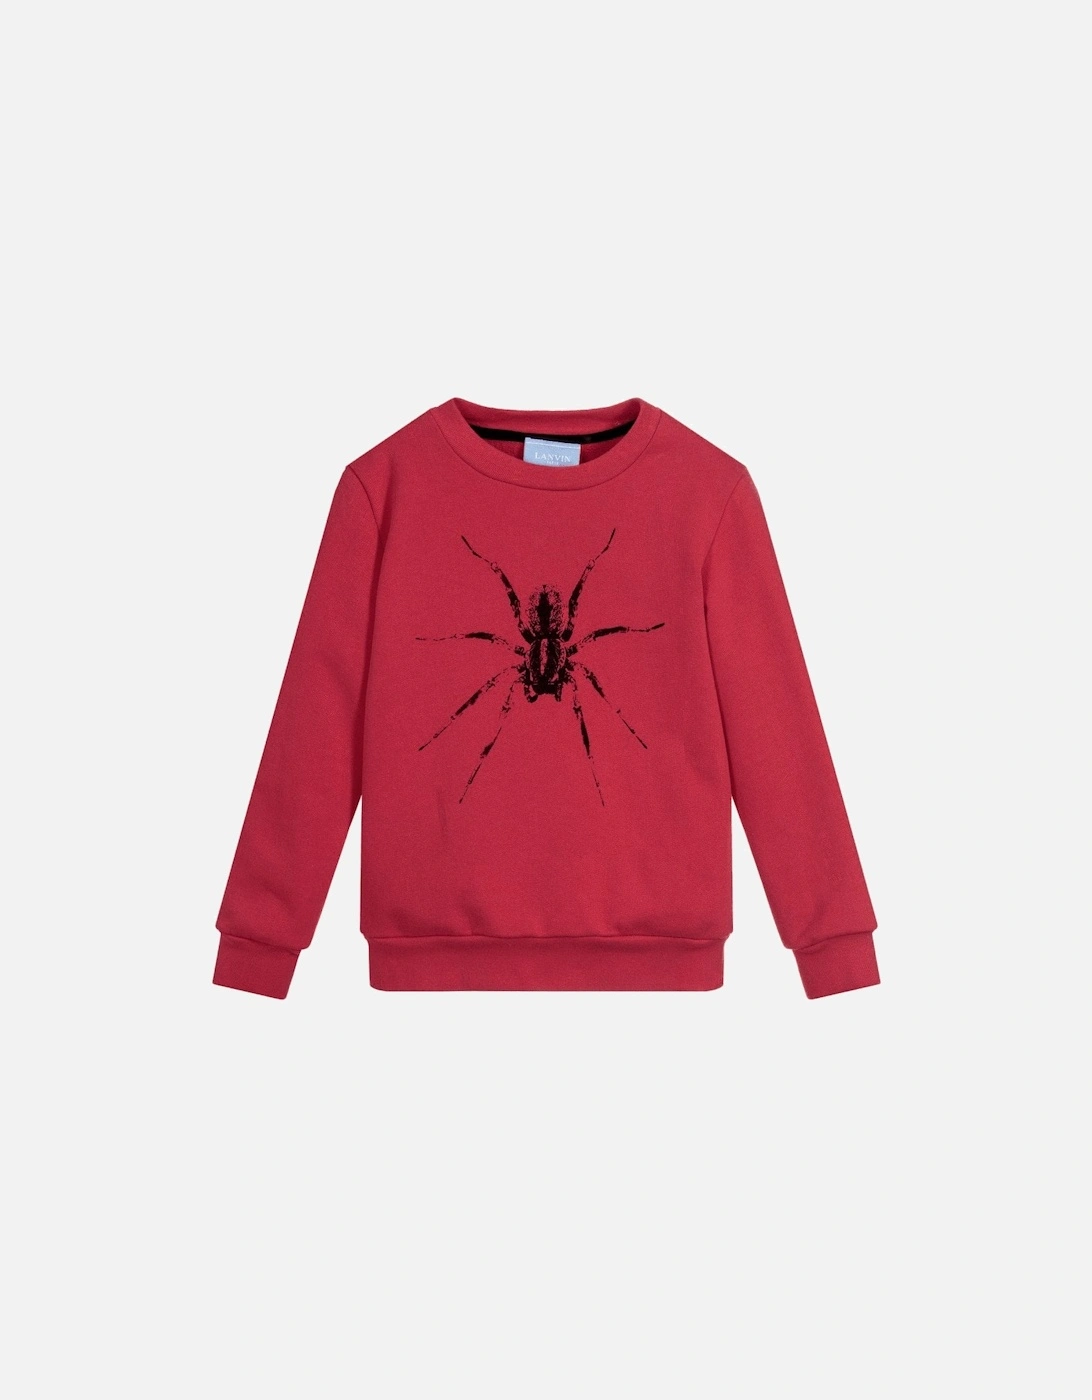 Paris Boys Spider Sweatshirt Burgundy, 3 of 2